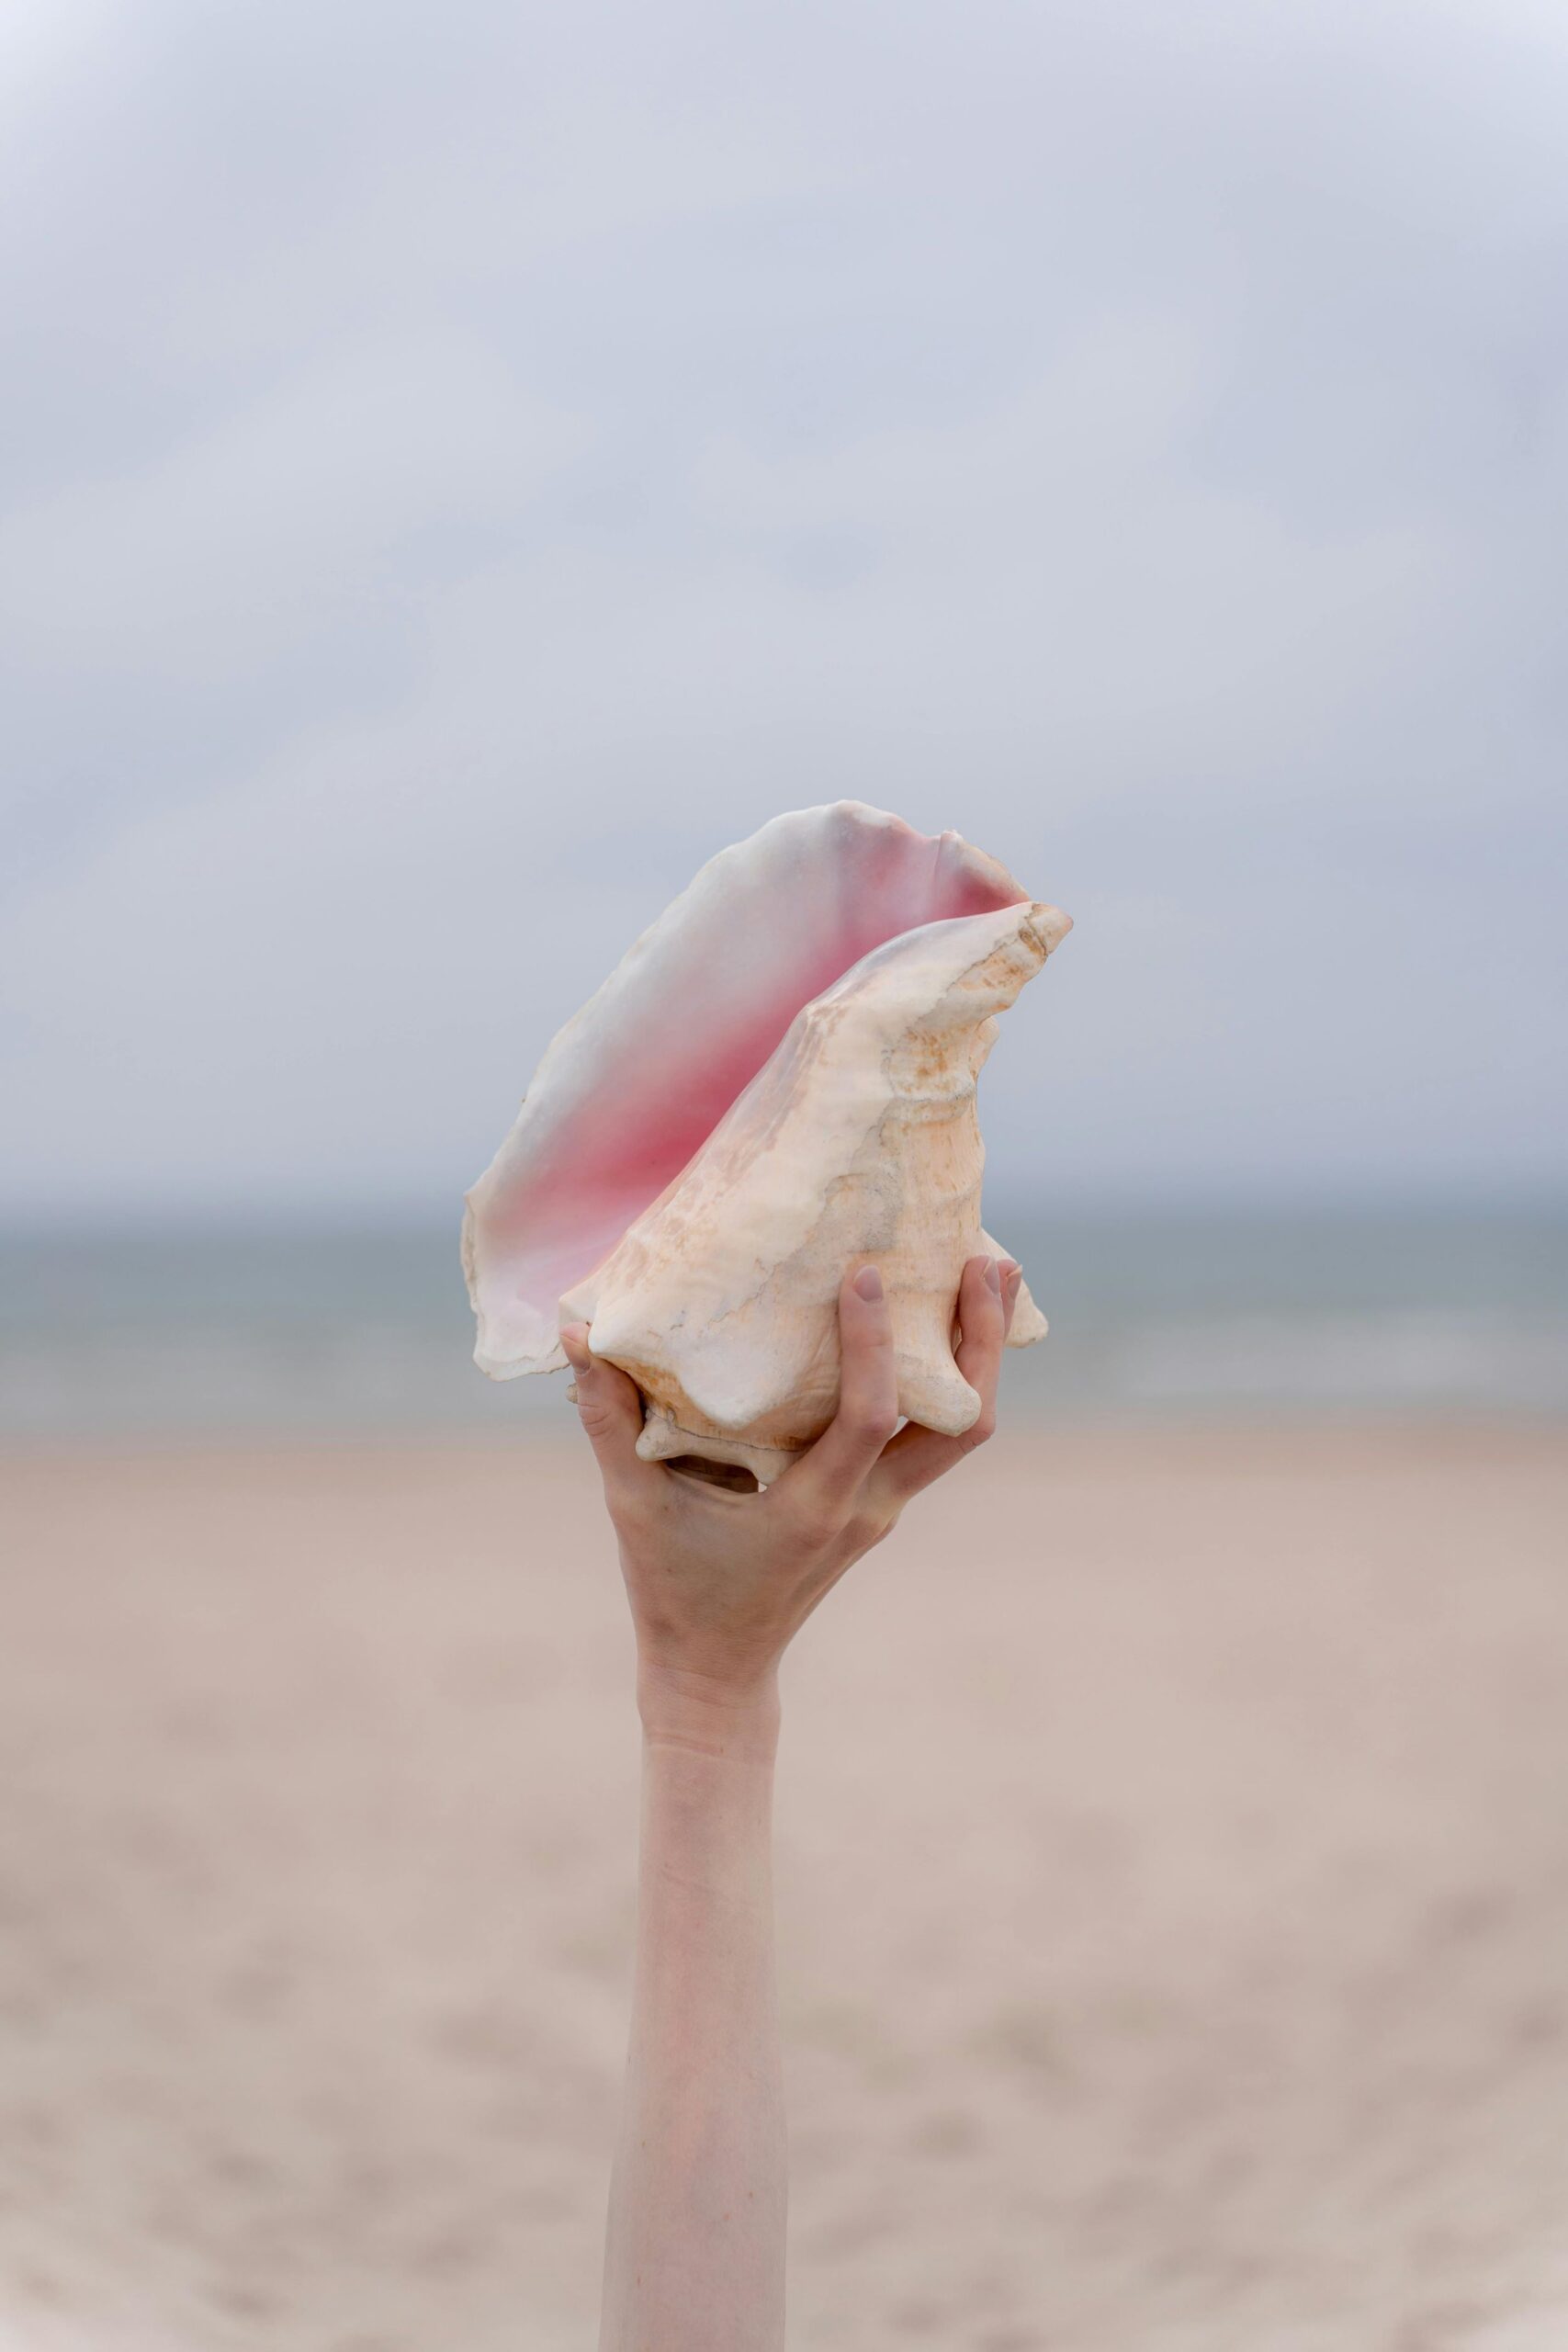 a hand raising a conch shell